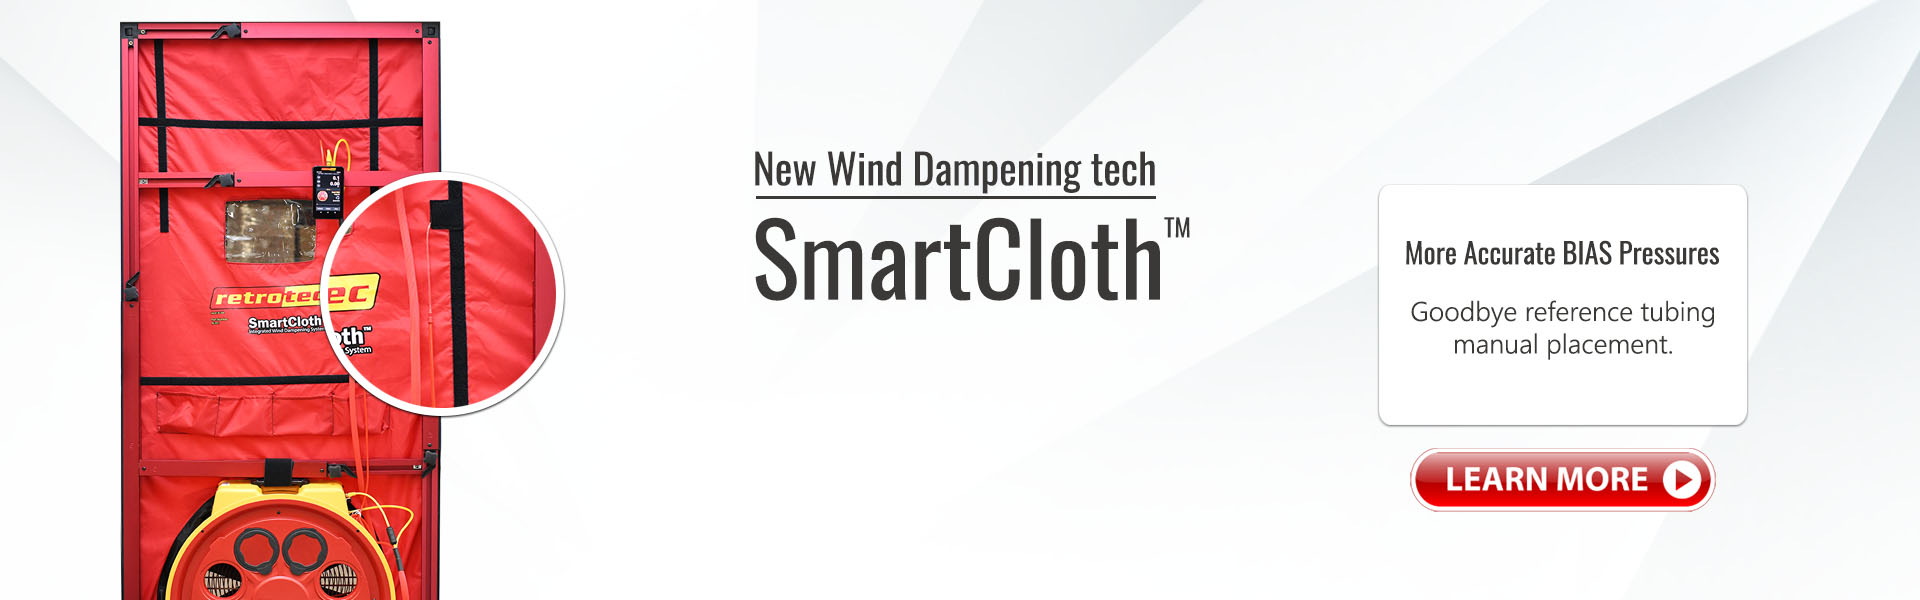 SmartCloth